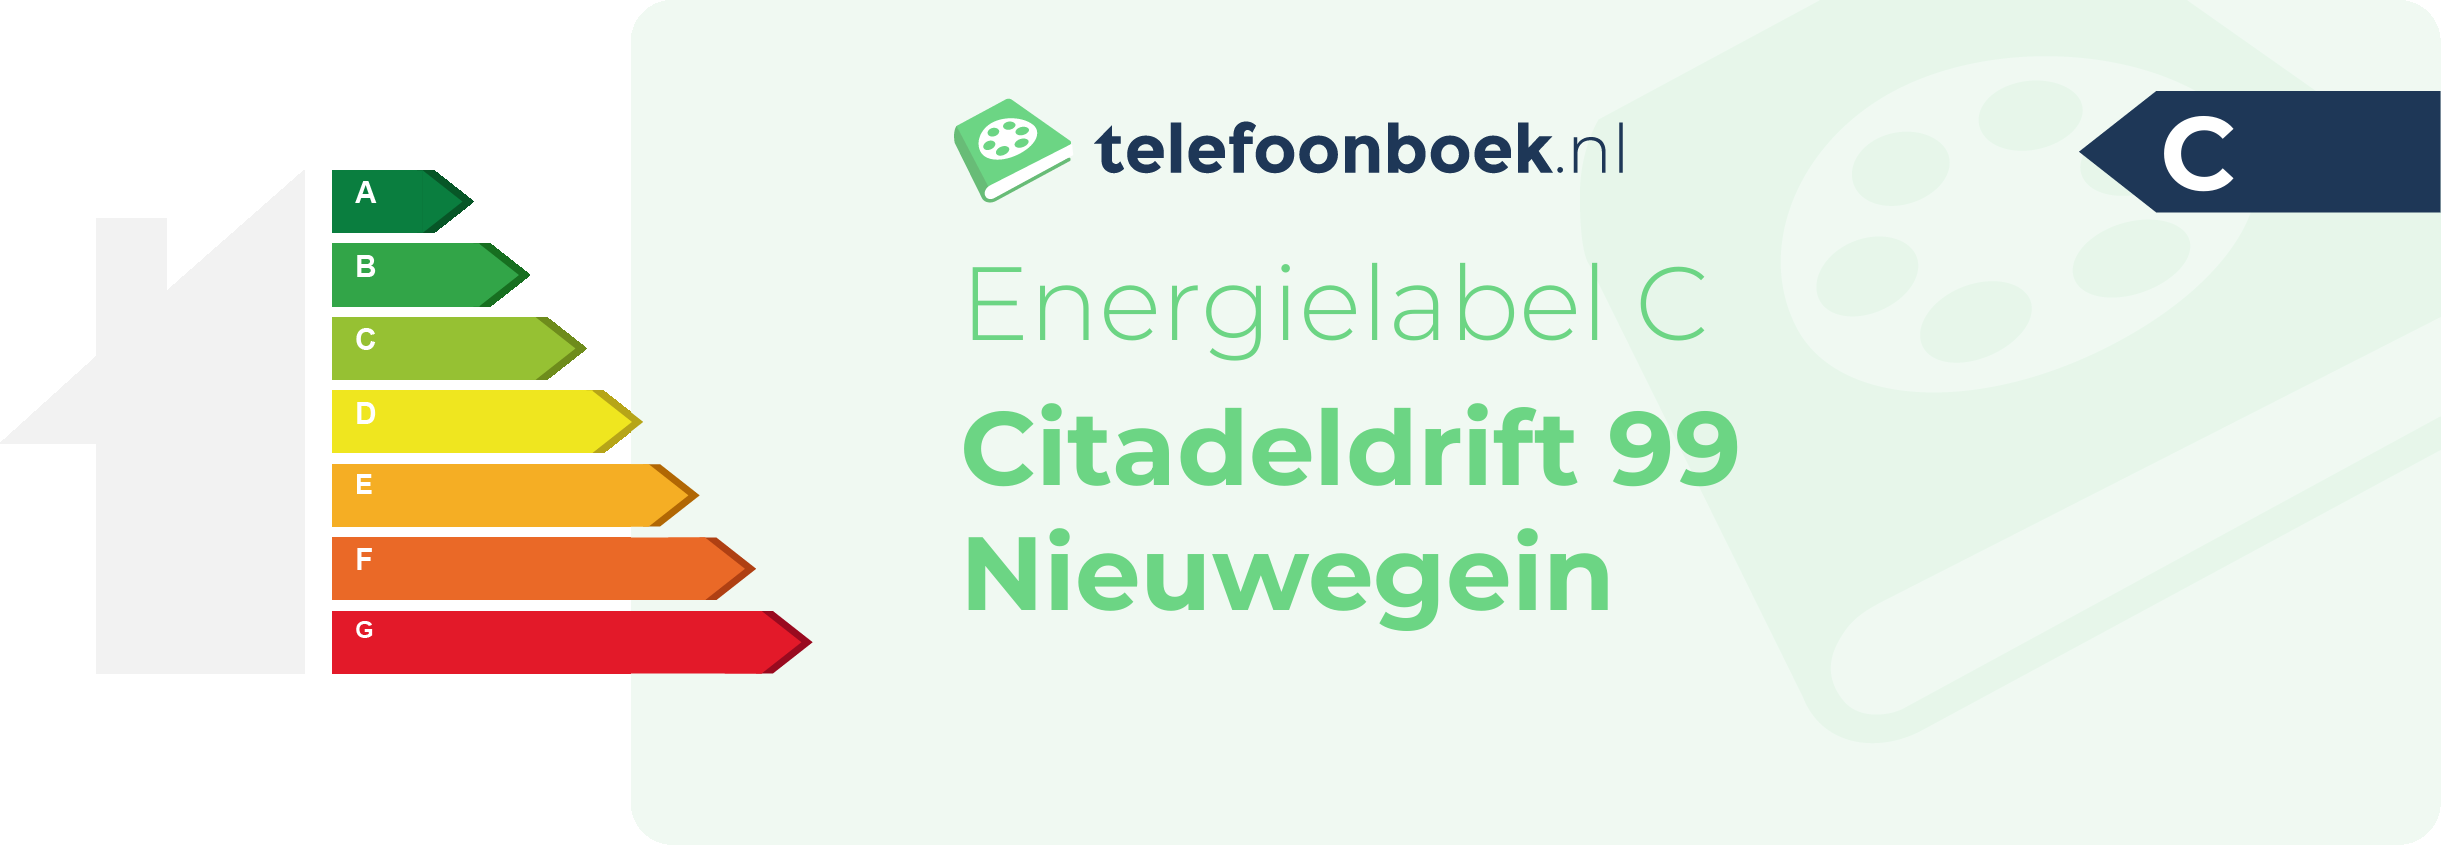 Energielabel Citadeldrift 99 Nieuwegein